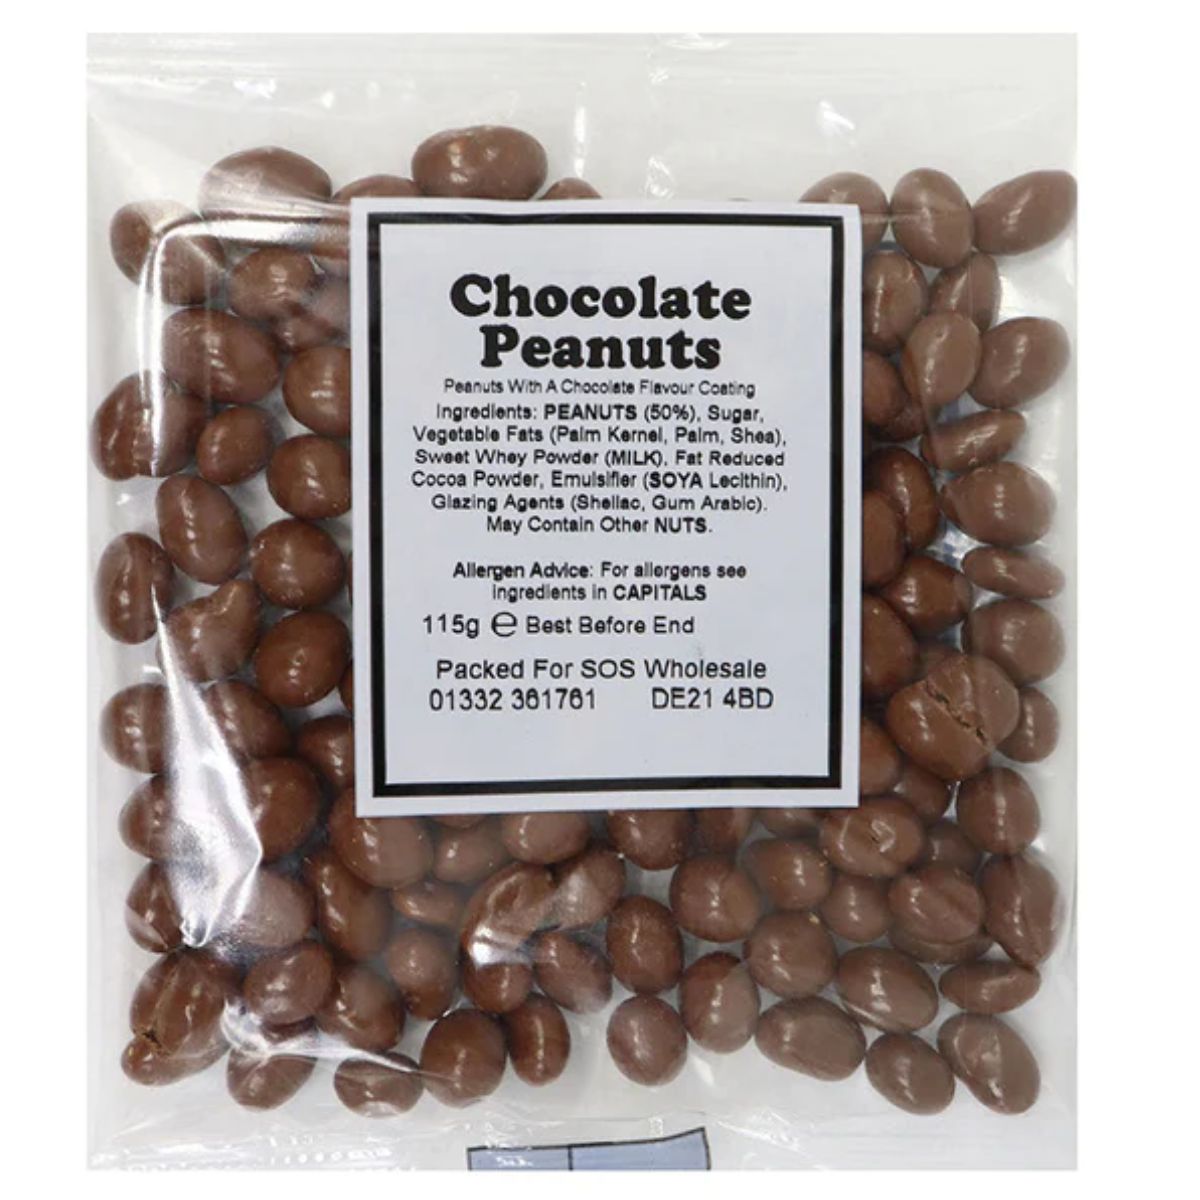 Bumper Bag - Chocolate Peanuts - 145g in a bag.